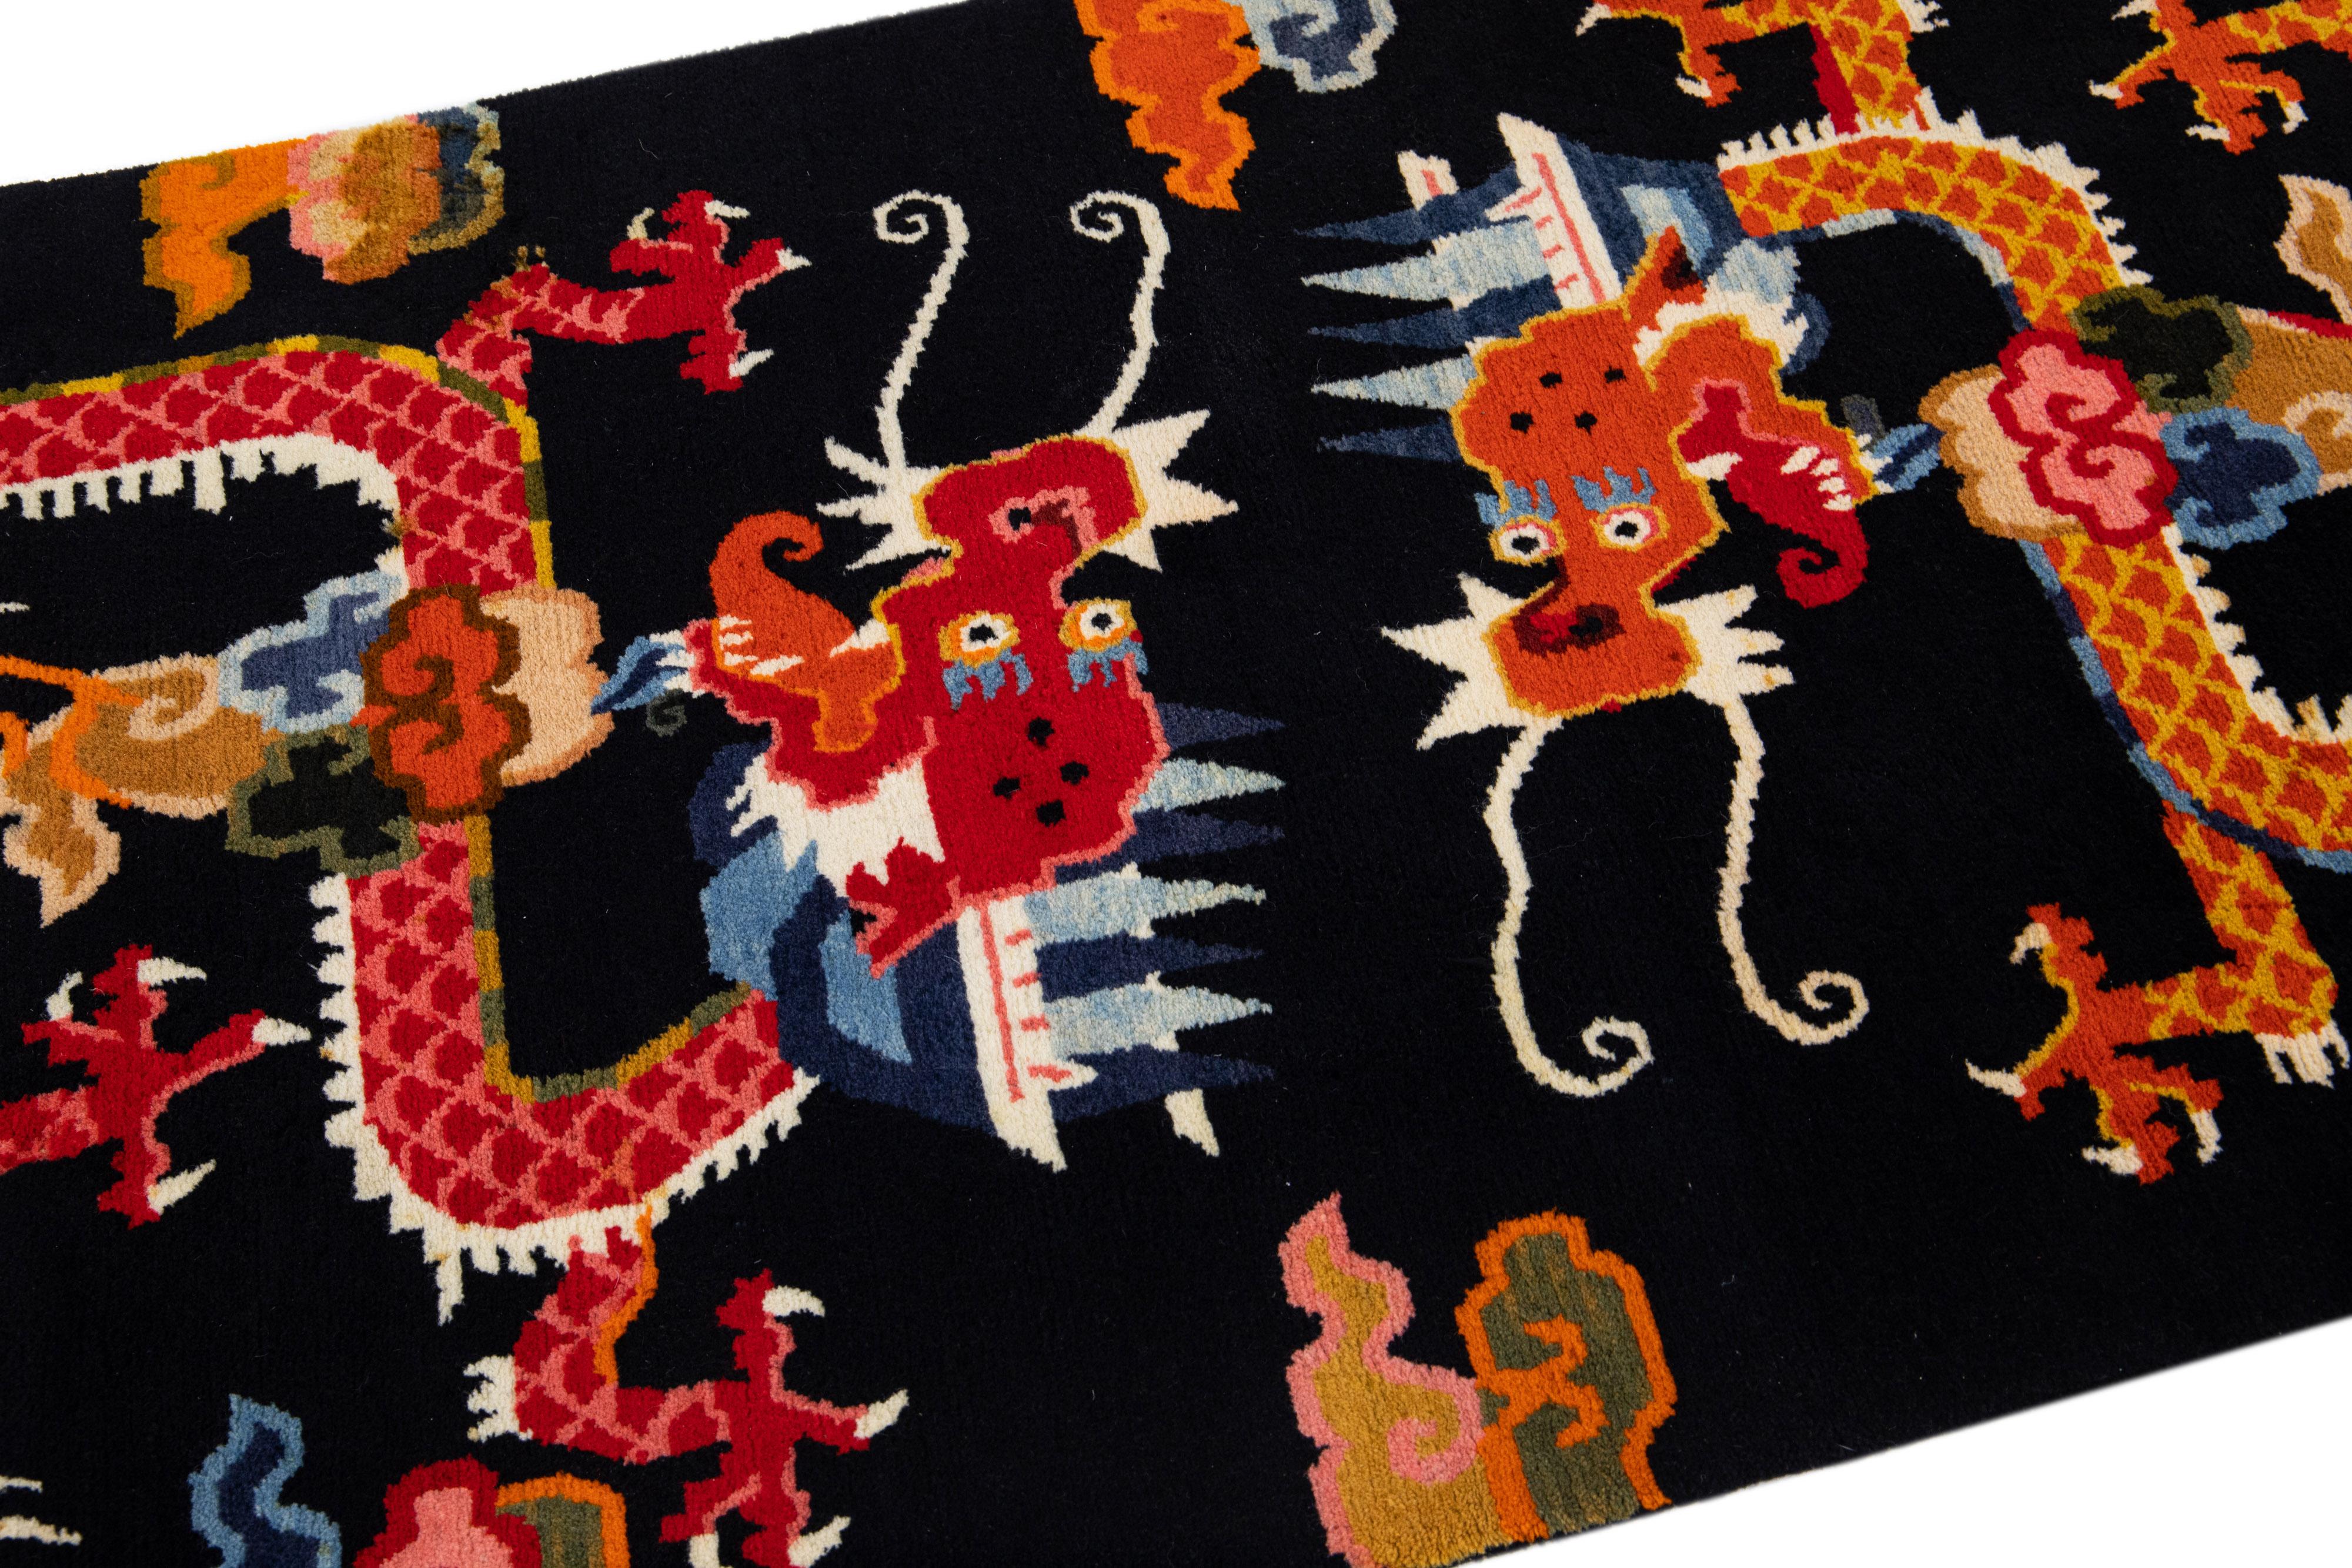 Magnifique tapis chinois ancien en laine nouée à la main avec un champ noir. Cette pièce présente des accents rouges et orange sur l'ensemble des motifs traditionnels de dragons chinois. 

Ce tapis mesure 3'1